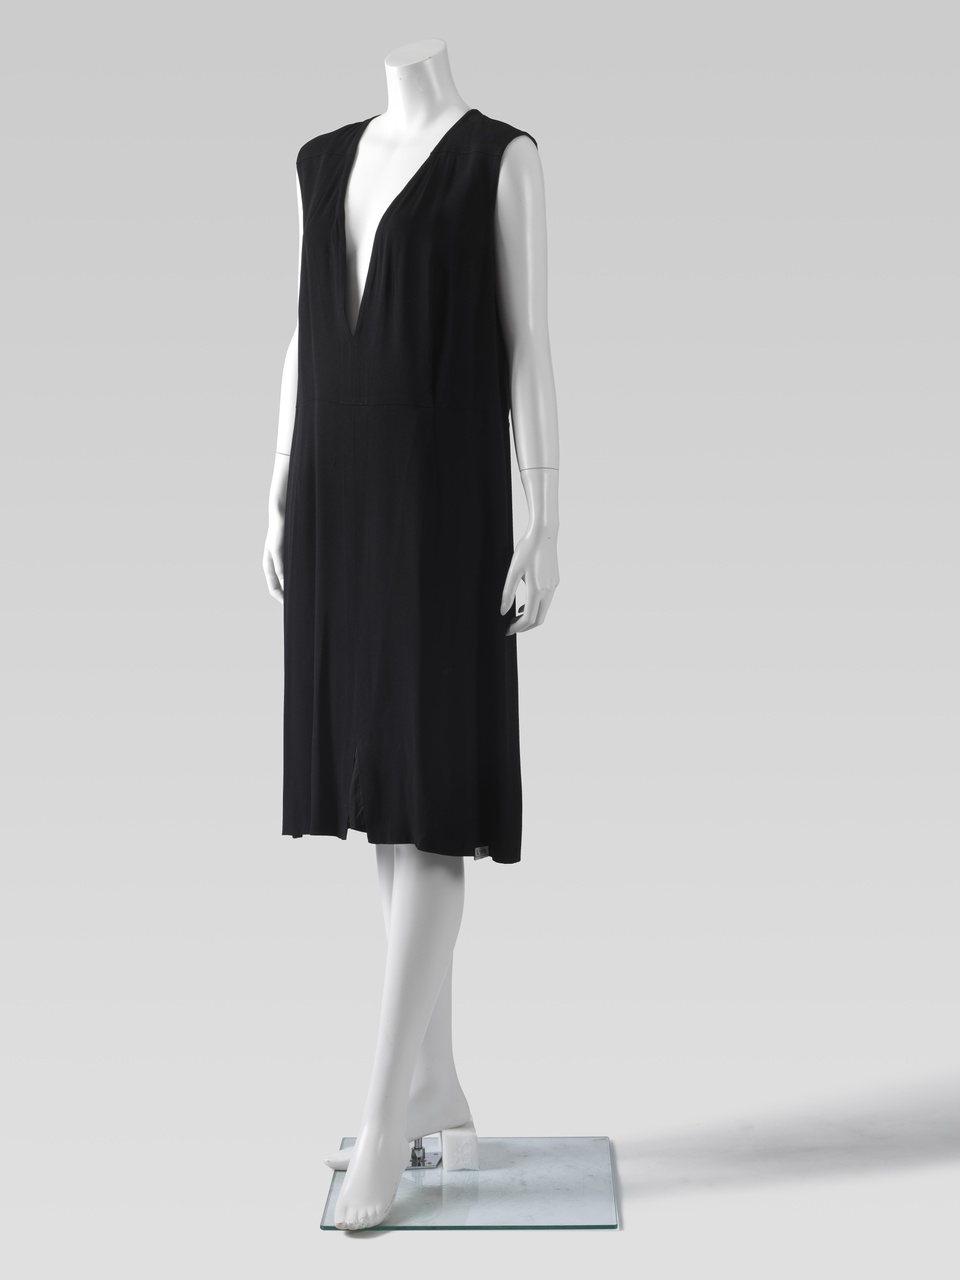 zwarte jurk, Reproduction d'une serie des vetements ancients du 1950,